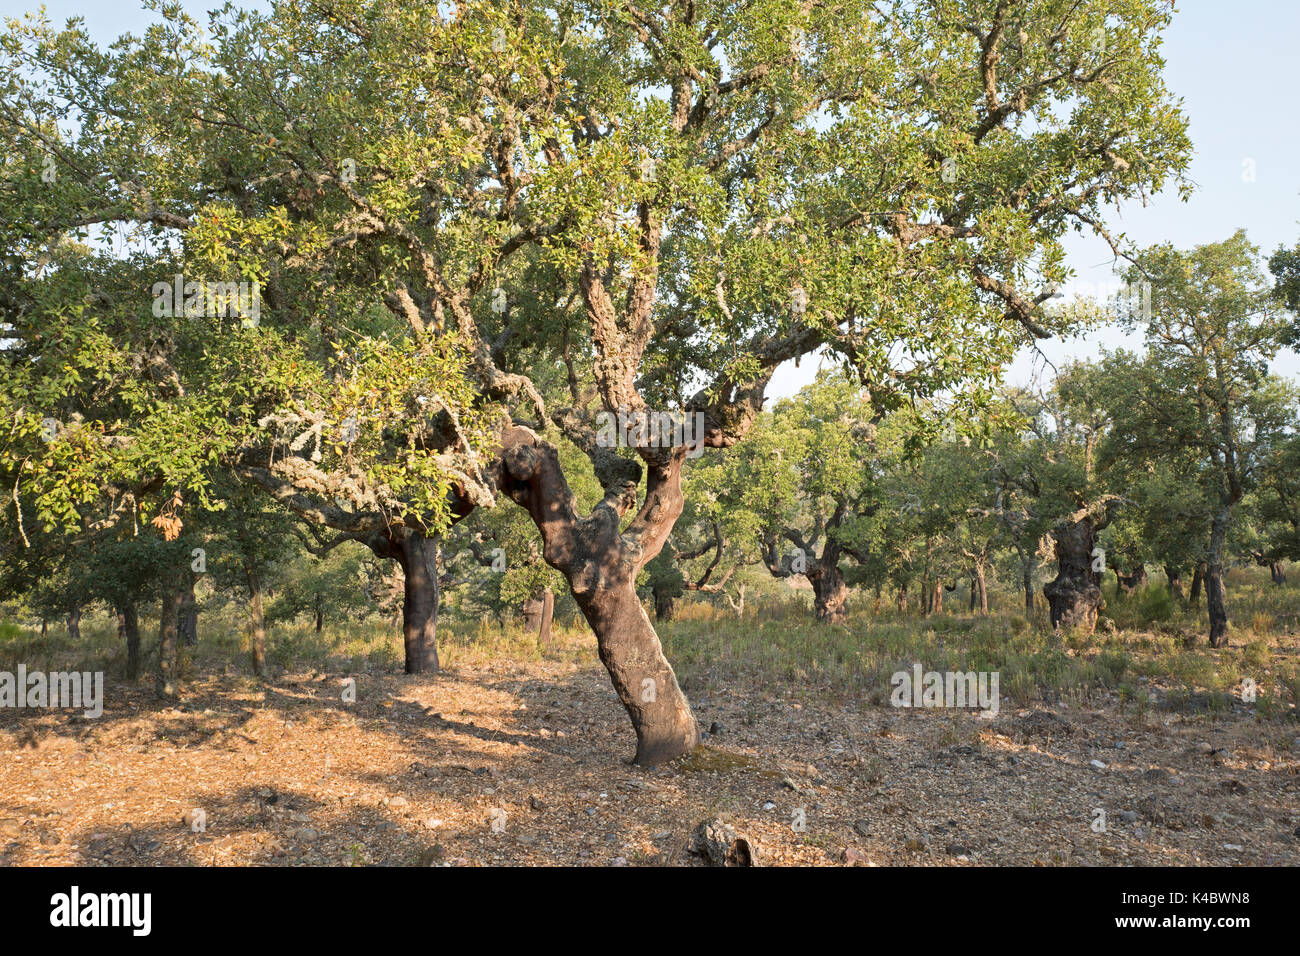 Forêt de chêne liège commercial dans le Parc Naturel Arribes del Duero (Parque Natural de Arribes del Duero) près de Pinilla de Lerma Espagne Juin Banque D'Images